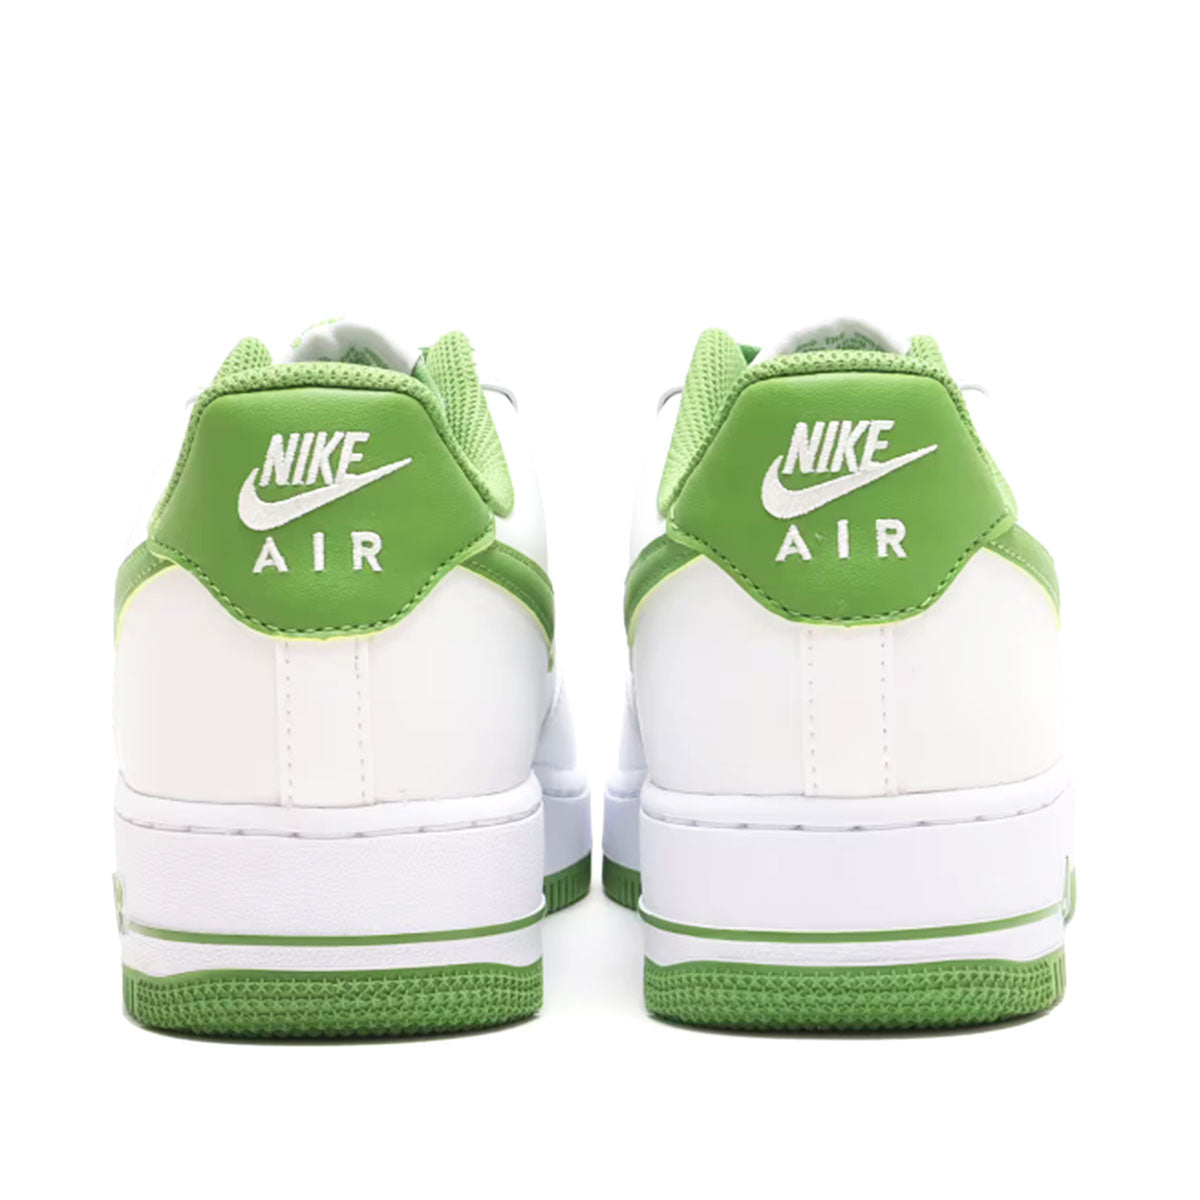 NIKE AIR FORCE 1 '07 WHITE / CHLOROPHYLL Nike Air Force 1 '07 "White / Chlorophyll [DH7561-105]